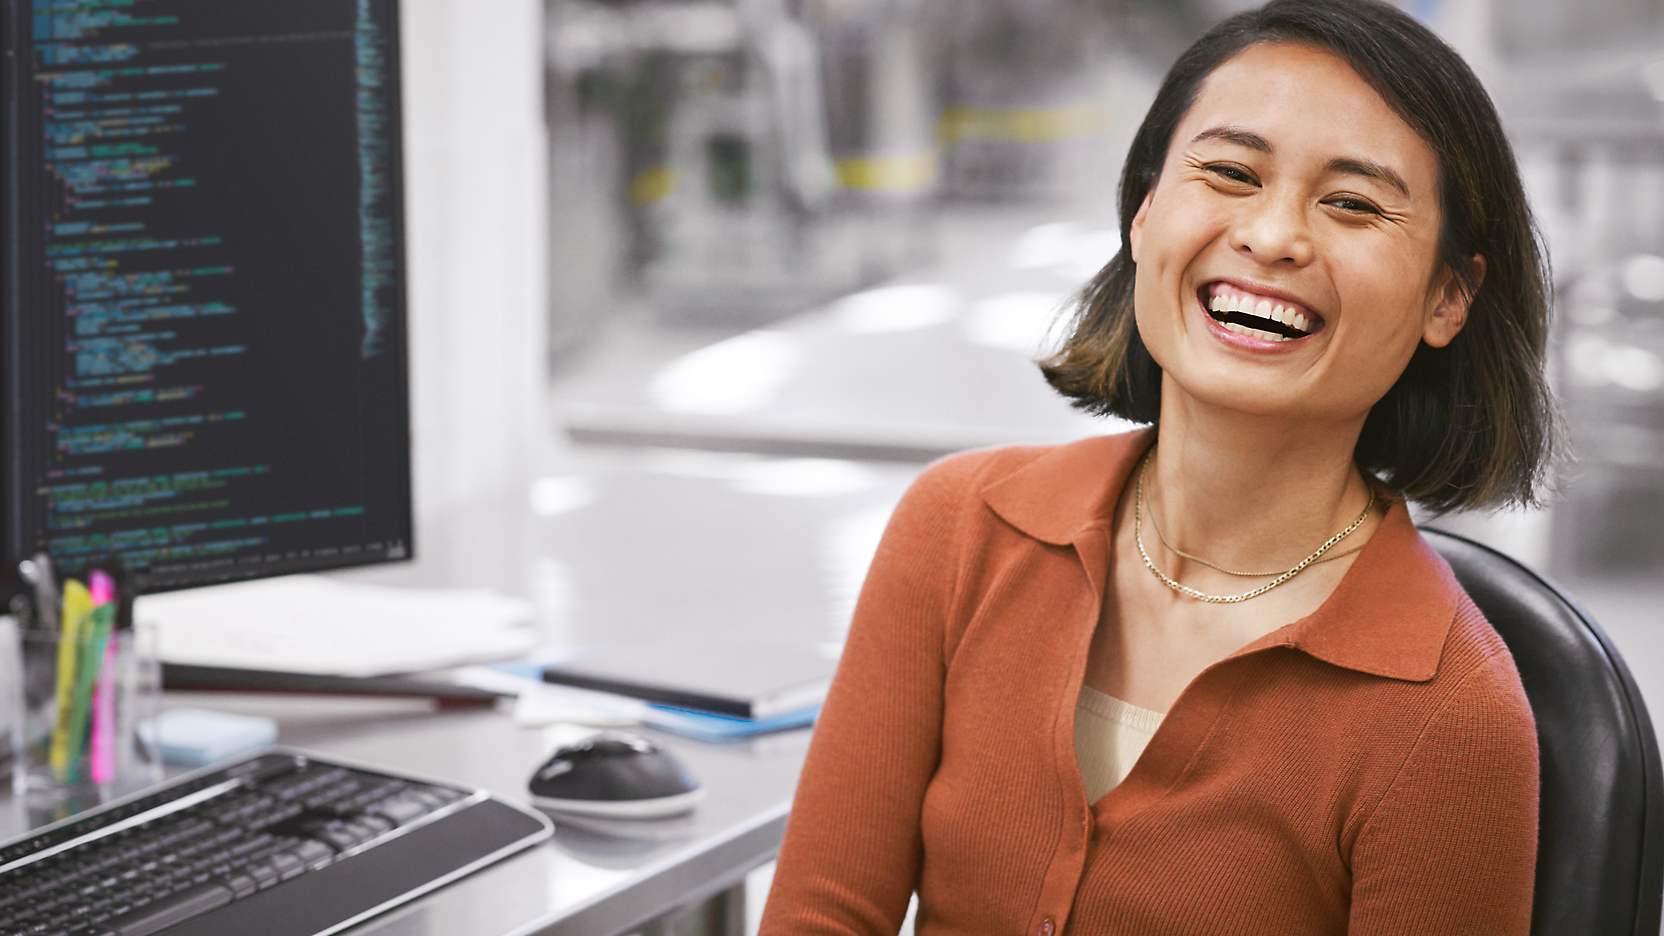 En glad kvinde sidder ved et skrivebord med en computer, der viser kode på skærmen, i et moderne kontorscenarie.